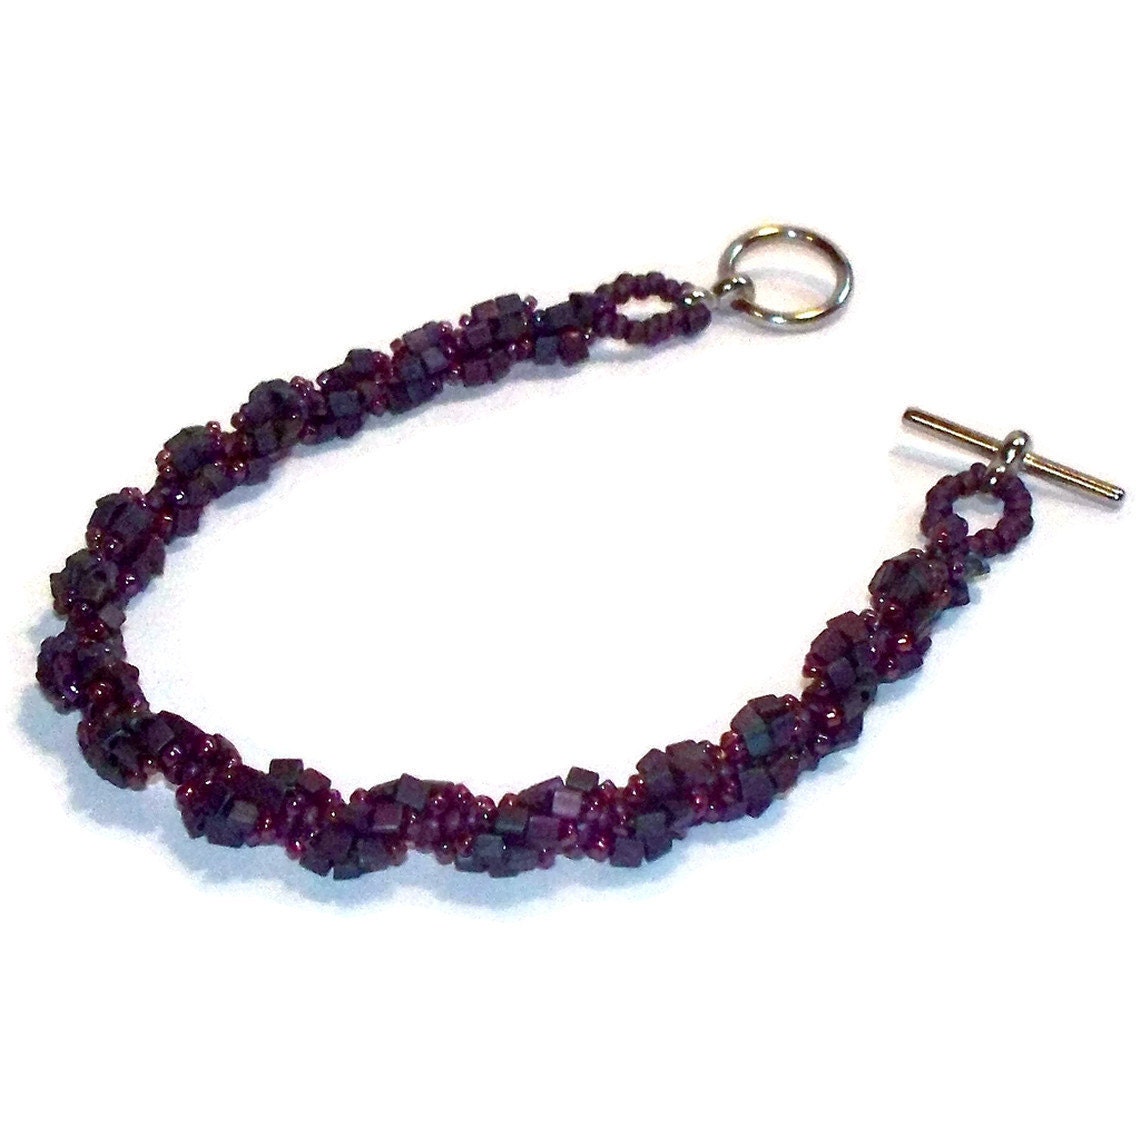 RESERVED for UpstateHerbWorks...Purple Berry DNA Spiral Bracelet